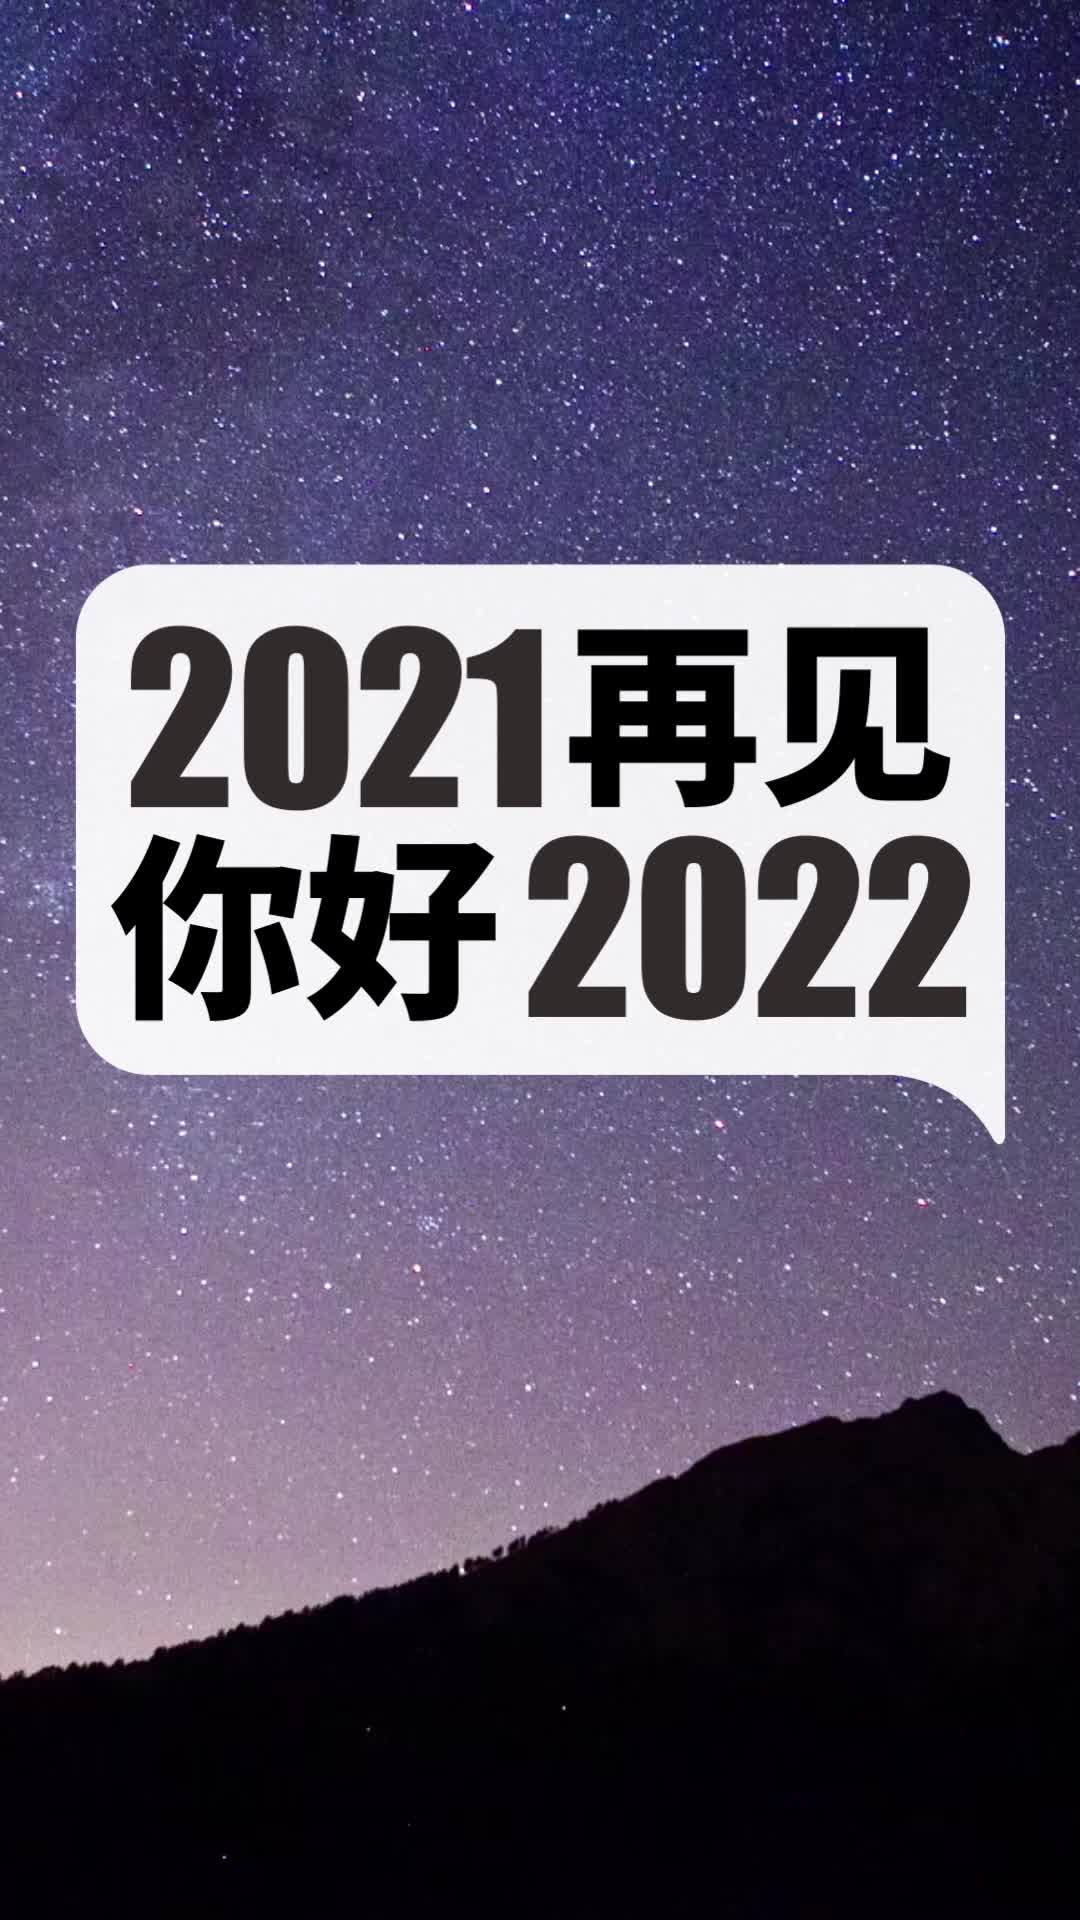 再见2021你好2022壁纸图片